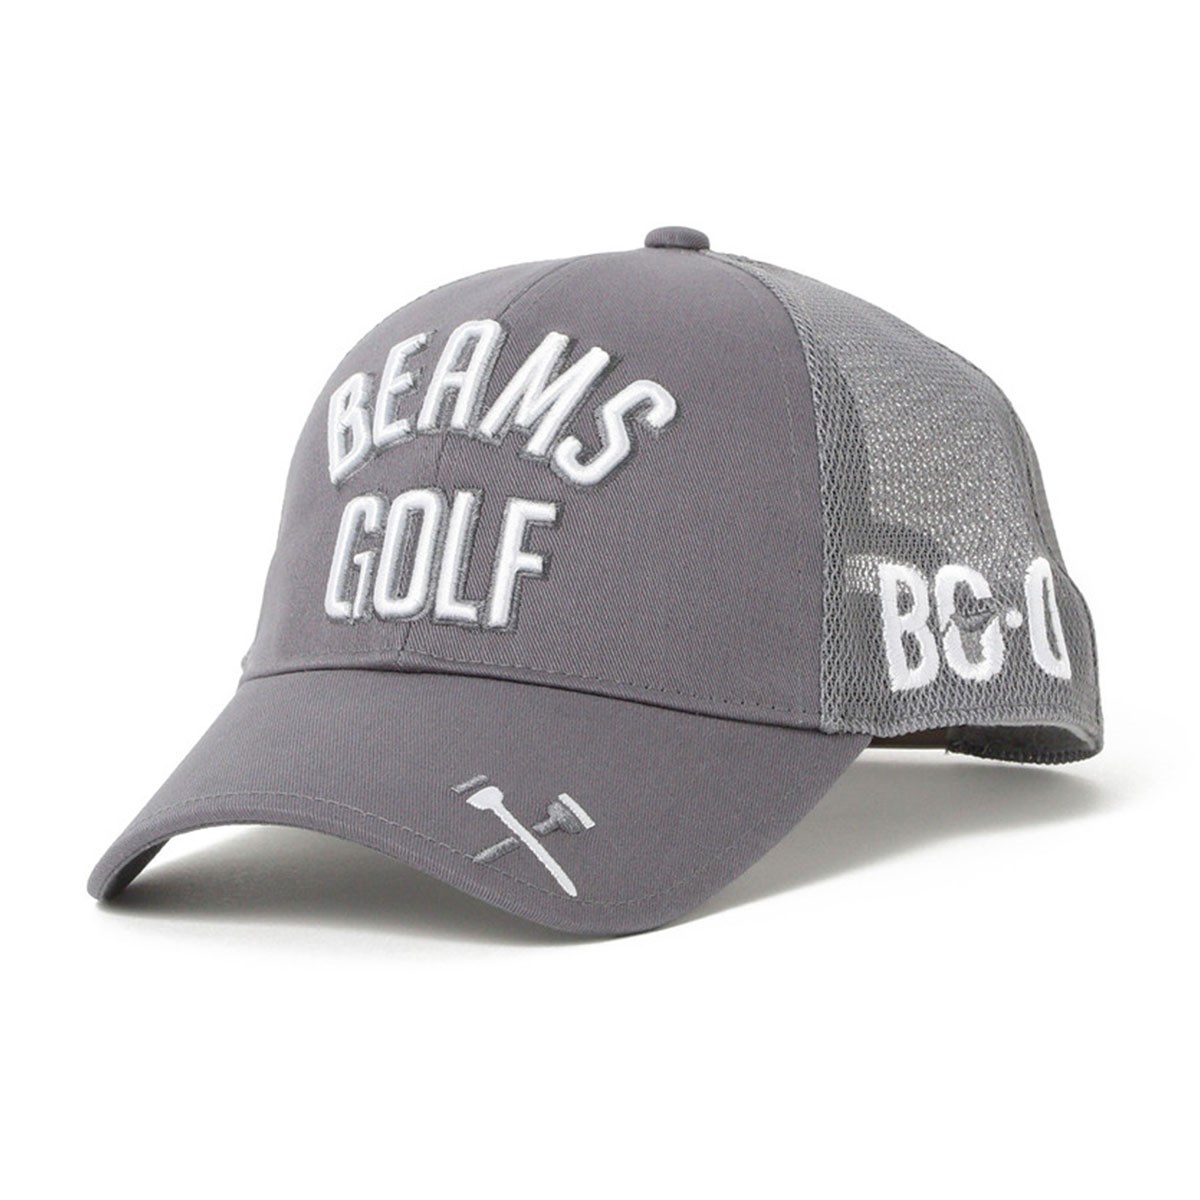 「ビームスゴルフ BEAMS GOLF ツアー メッシュ キャップ 2020SS 」（帽子）- ゴルフ(GOLF)用品のネット通販